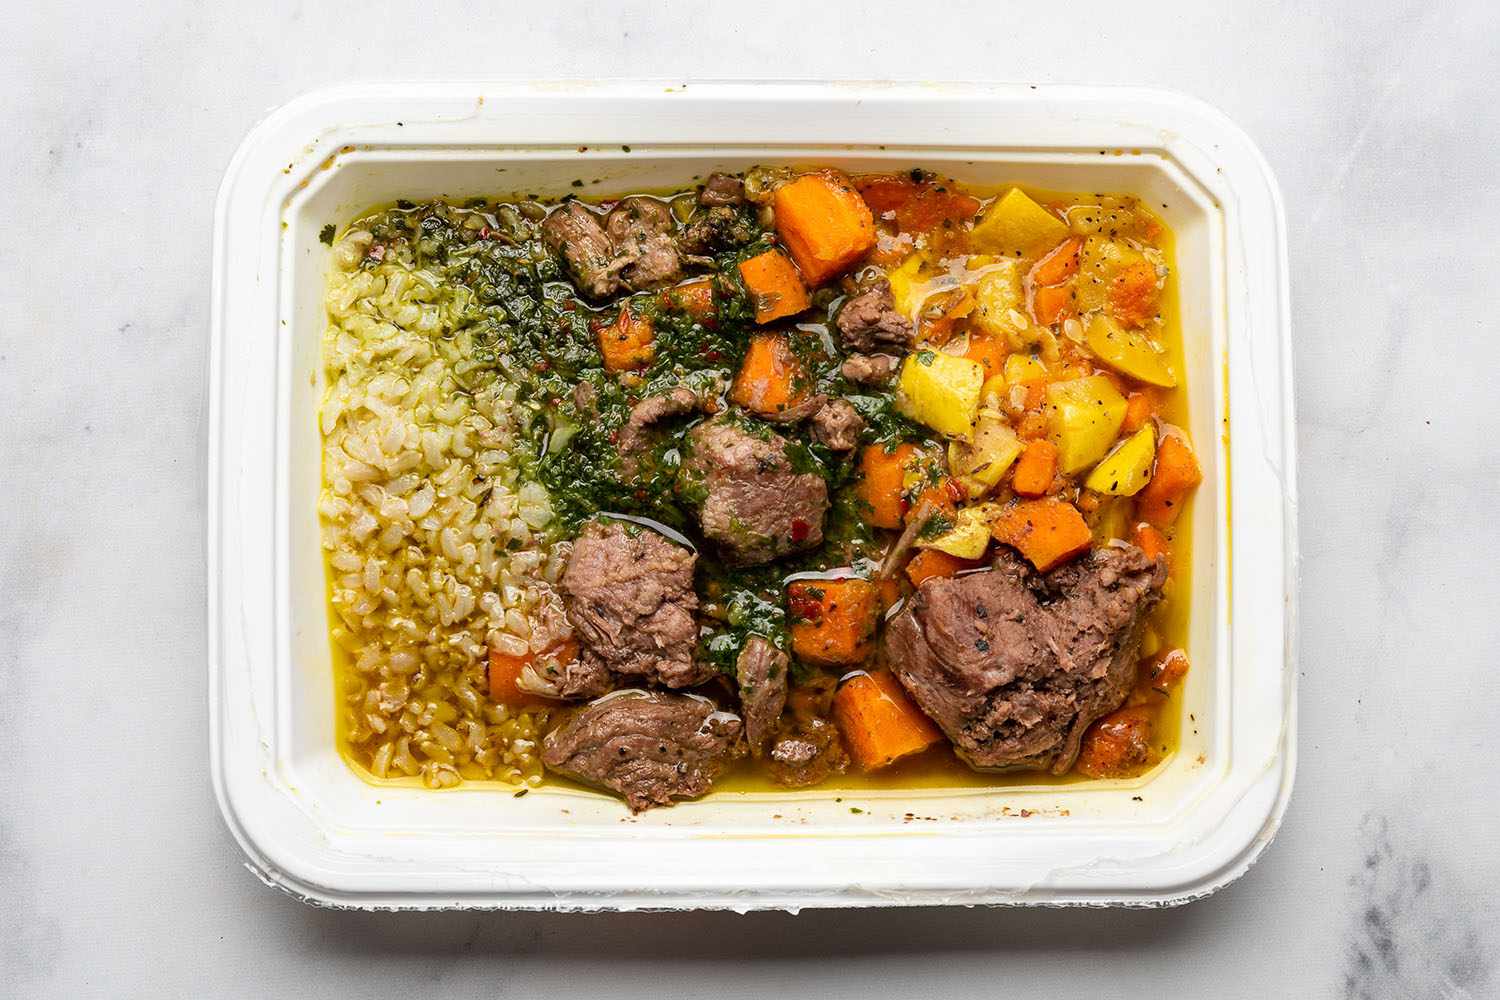 verse n magere maaltijd met rundvlees, groenten en rijst in een witte container